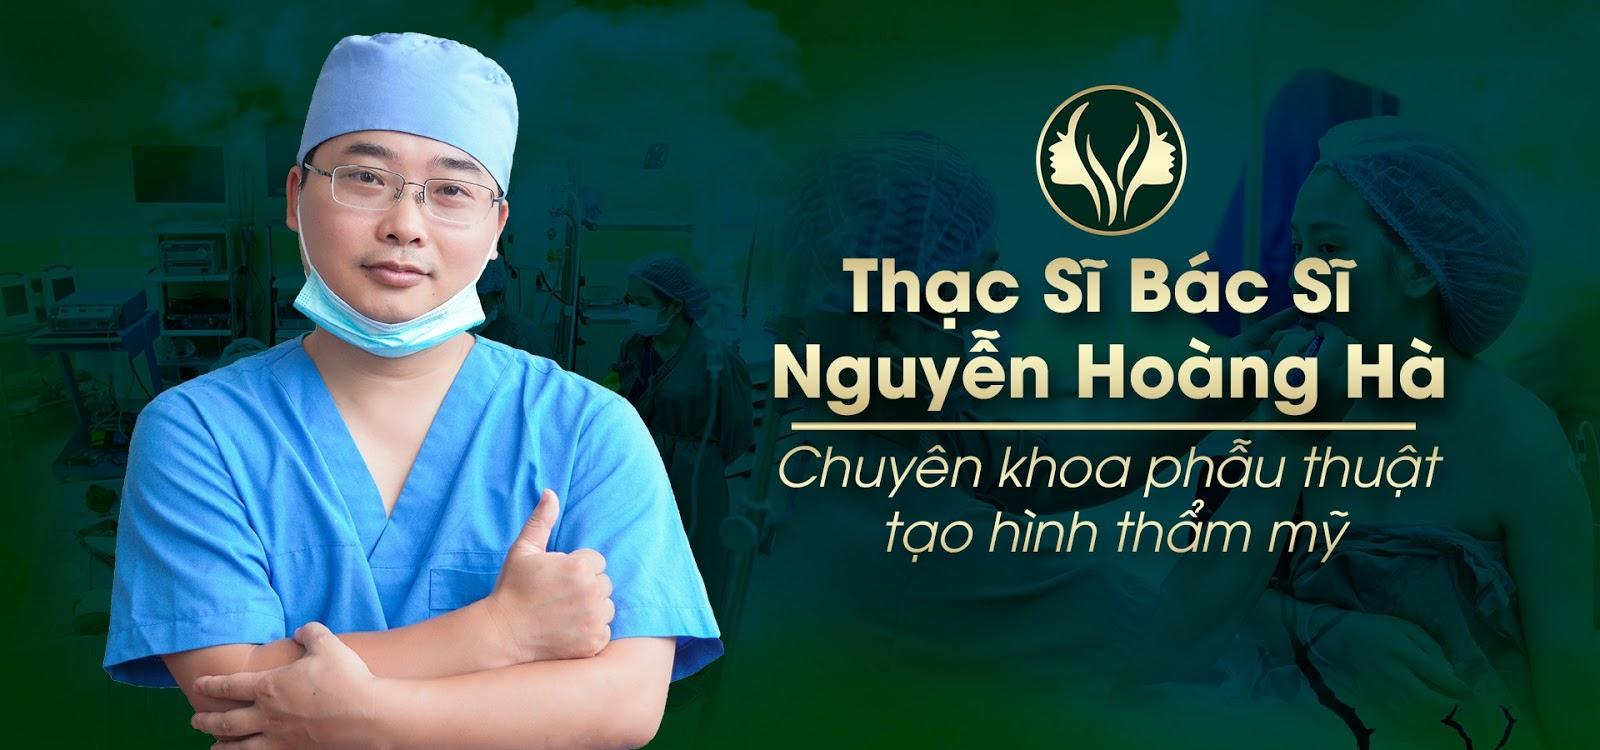 hS.BS Nguyễn Hoàng Hà - Giám đốc chuyên môn Dr Hoàng Hà/ Chuyên khoa PTTM 15 năm kinh nghiệm.